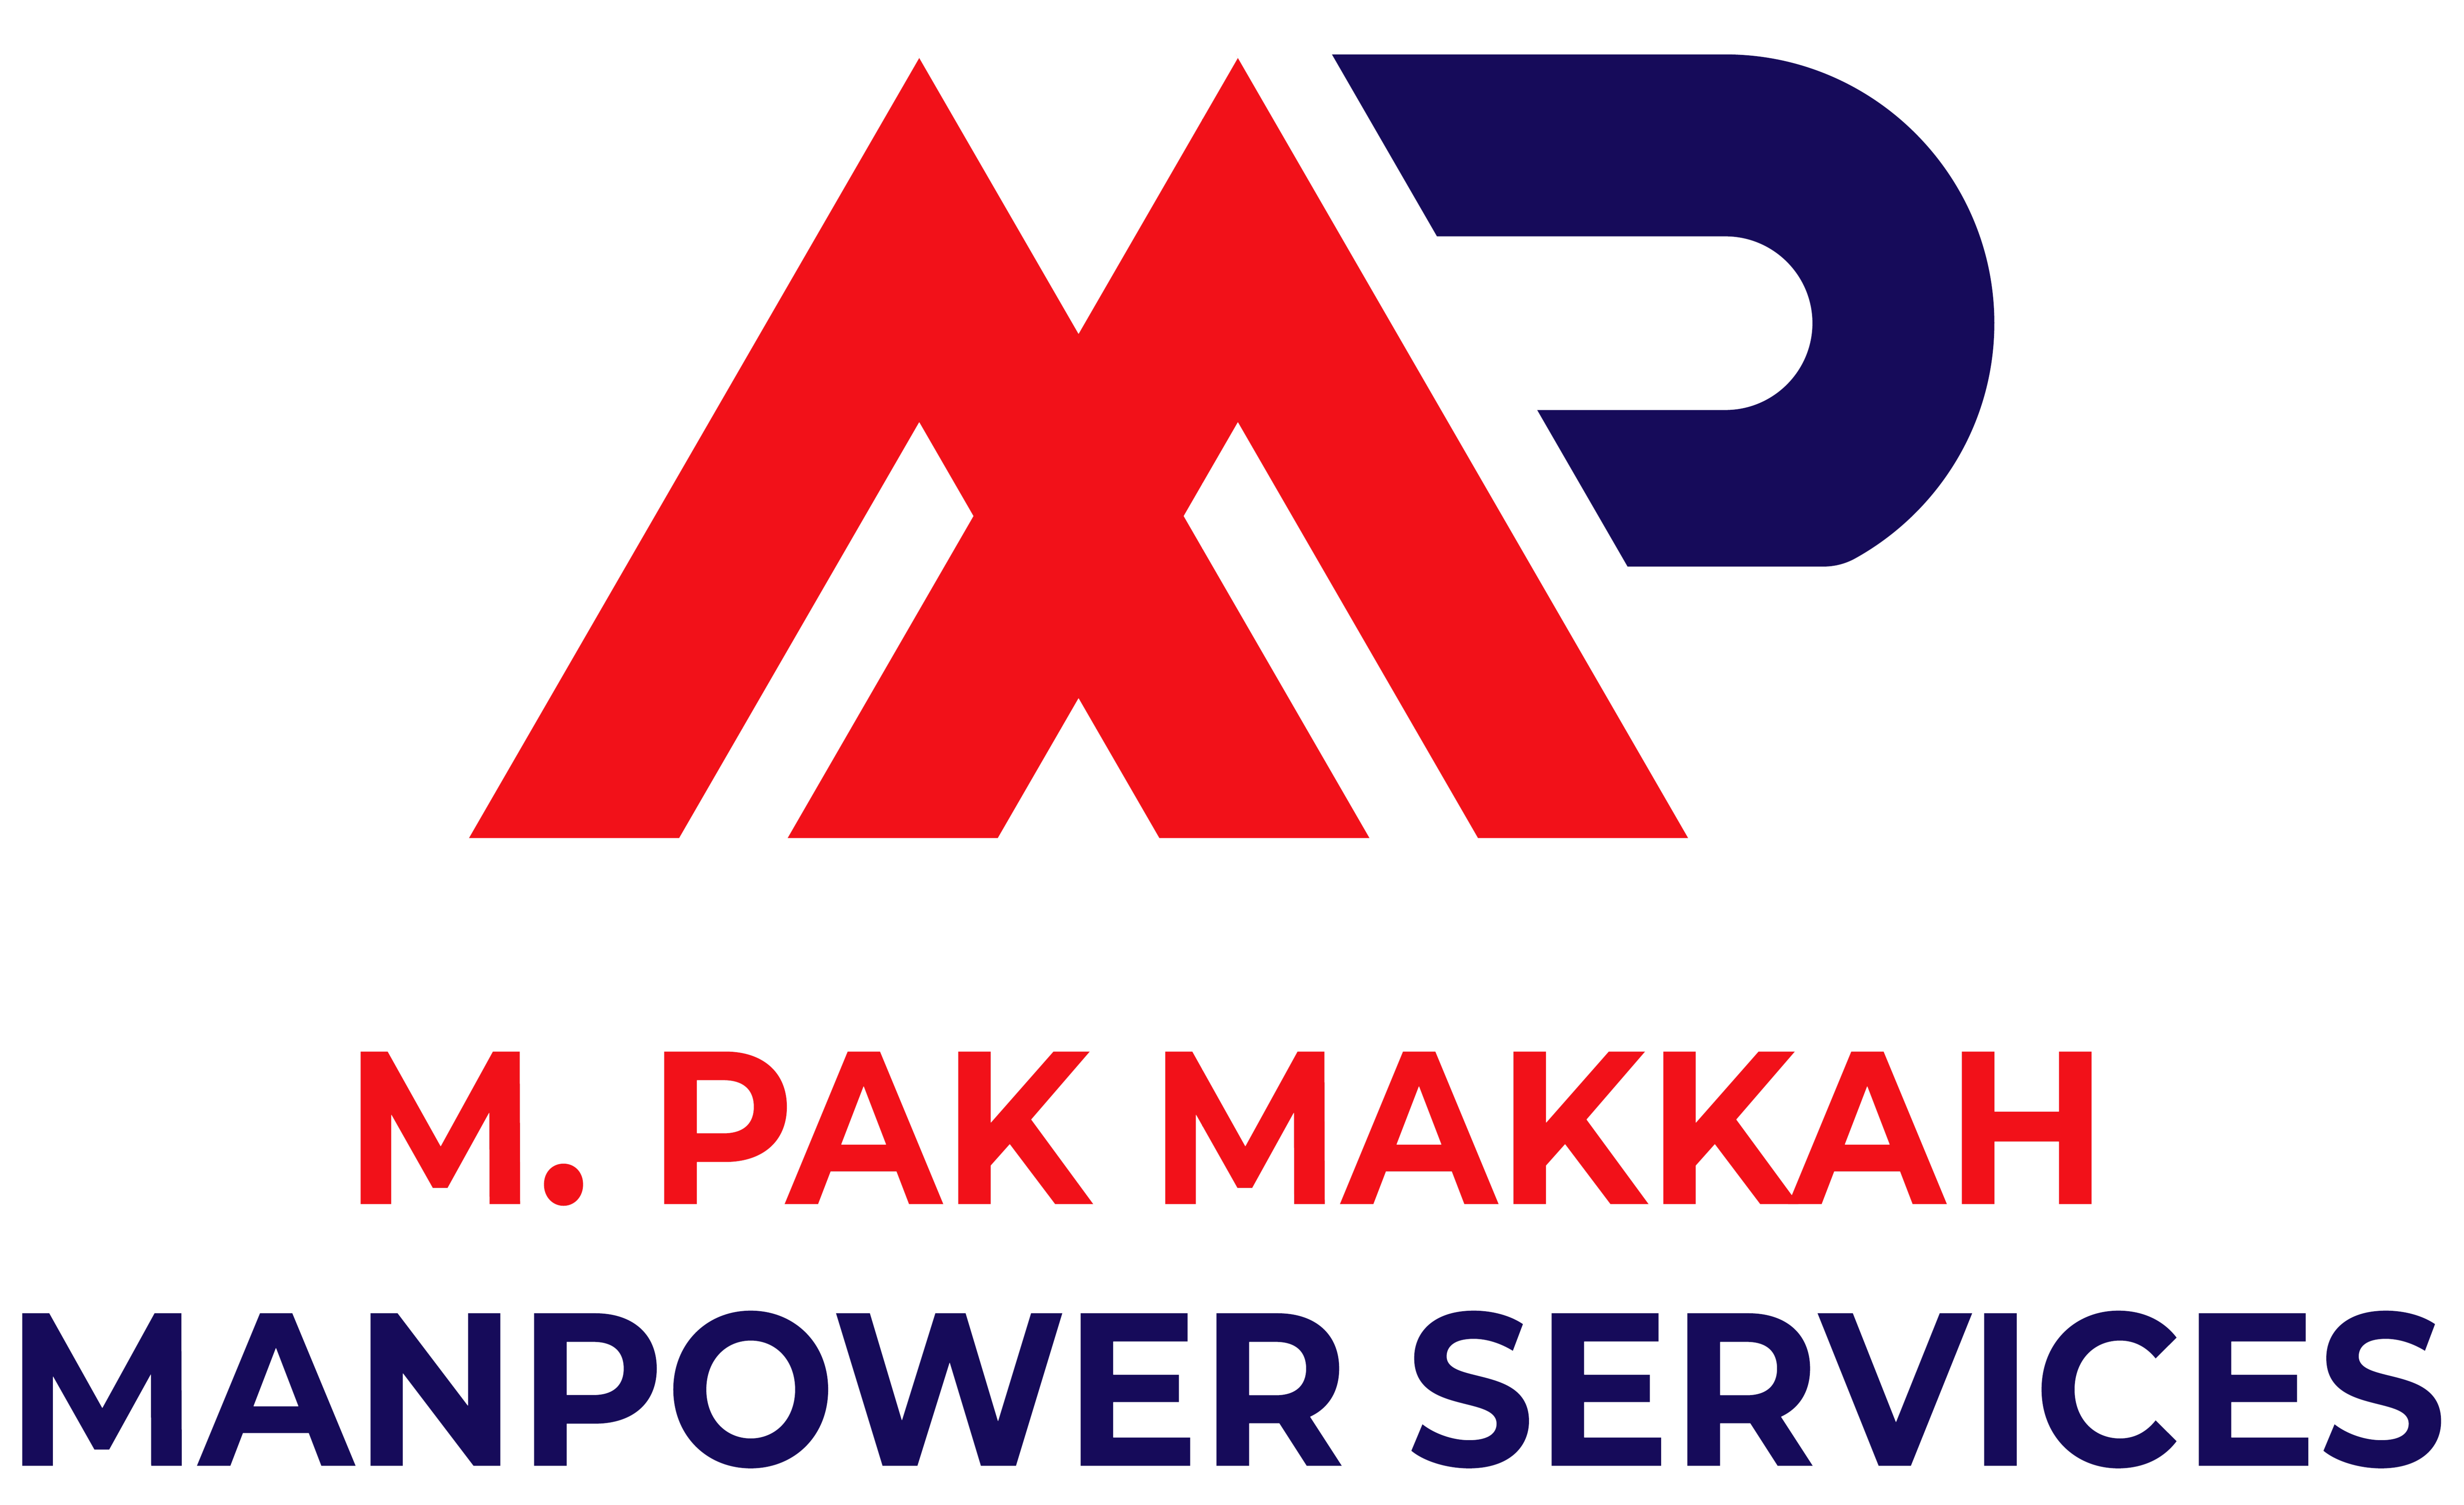 M. Pak Makkah Services